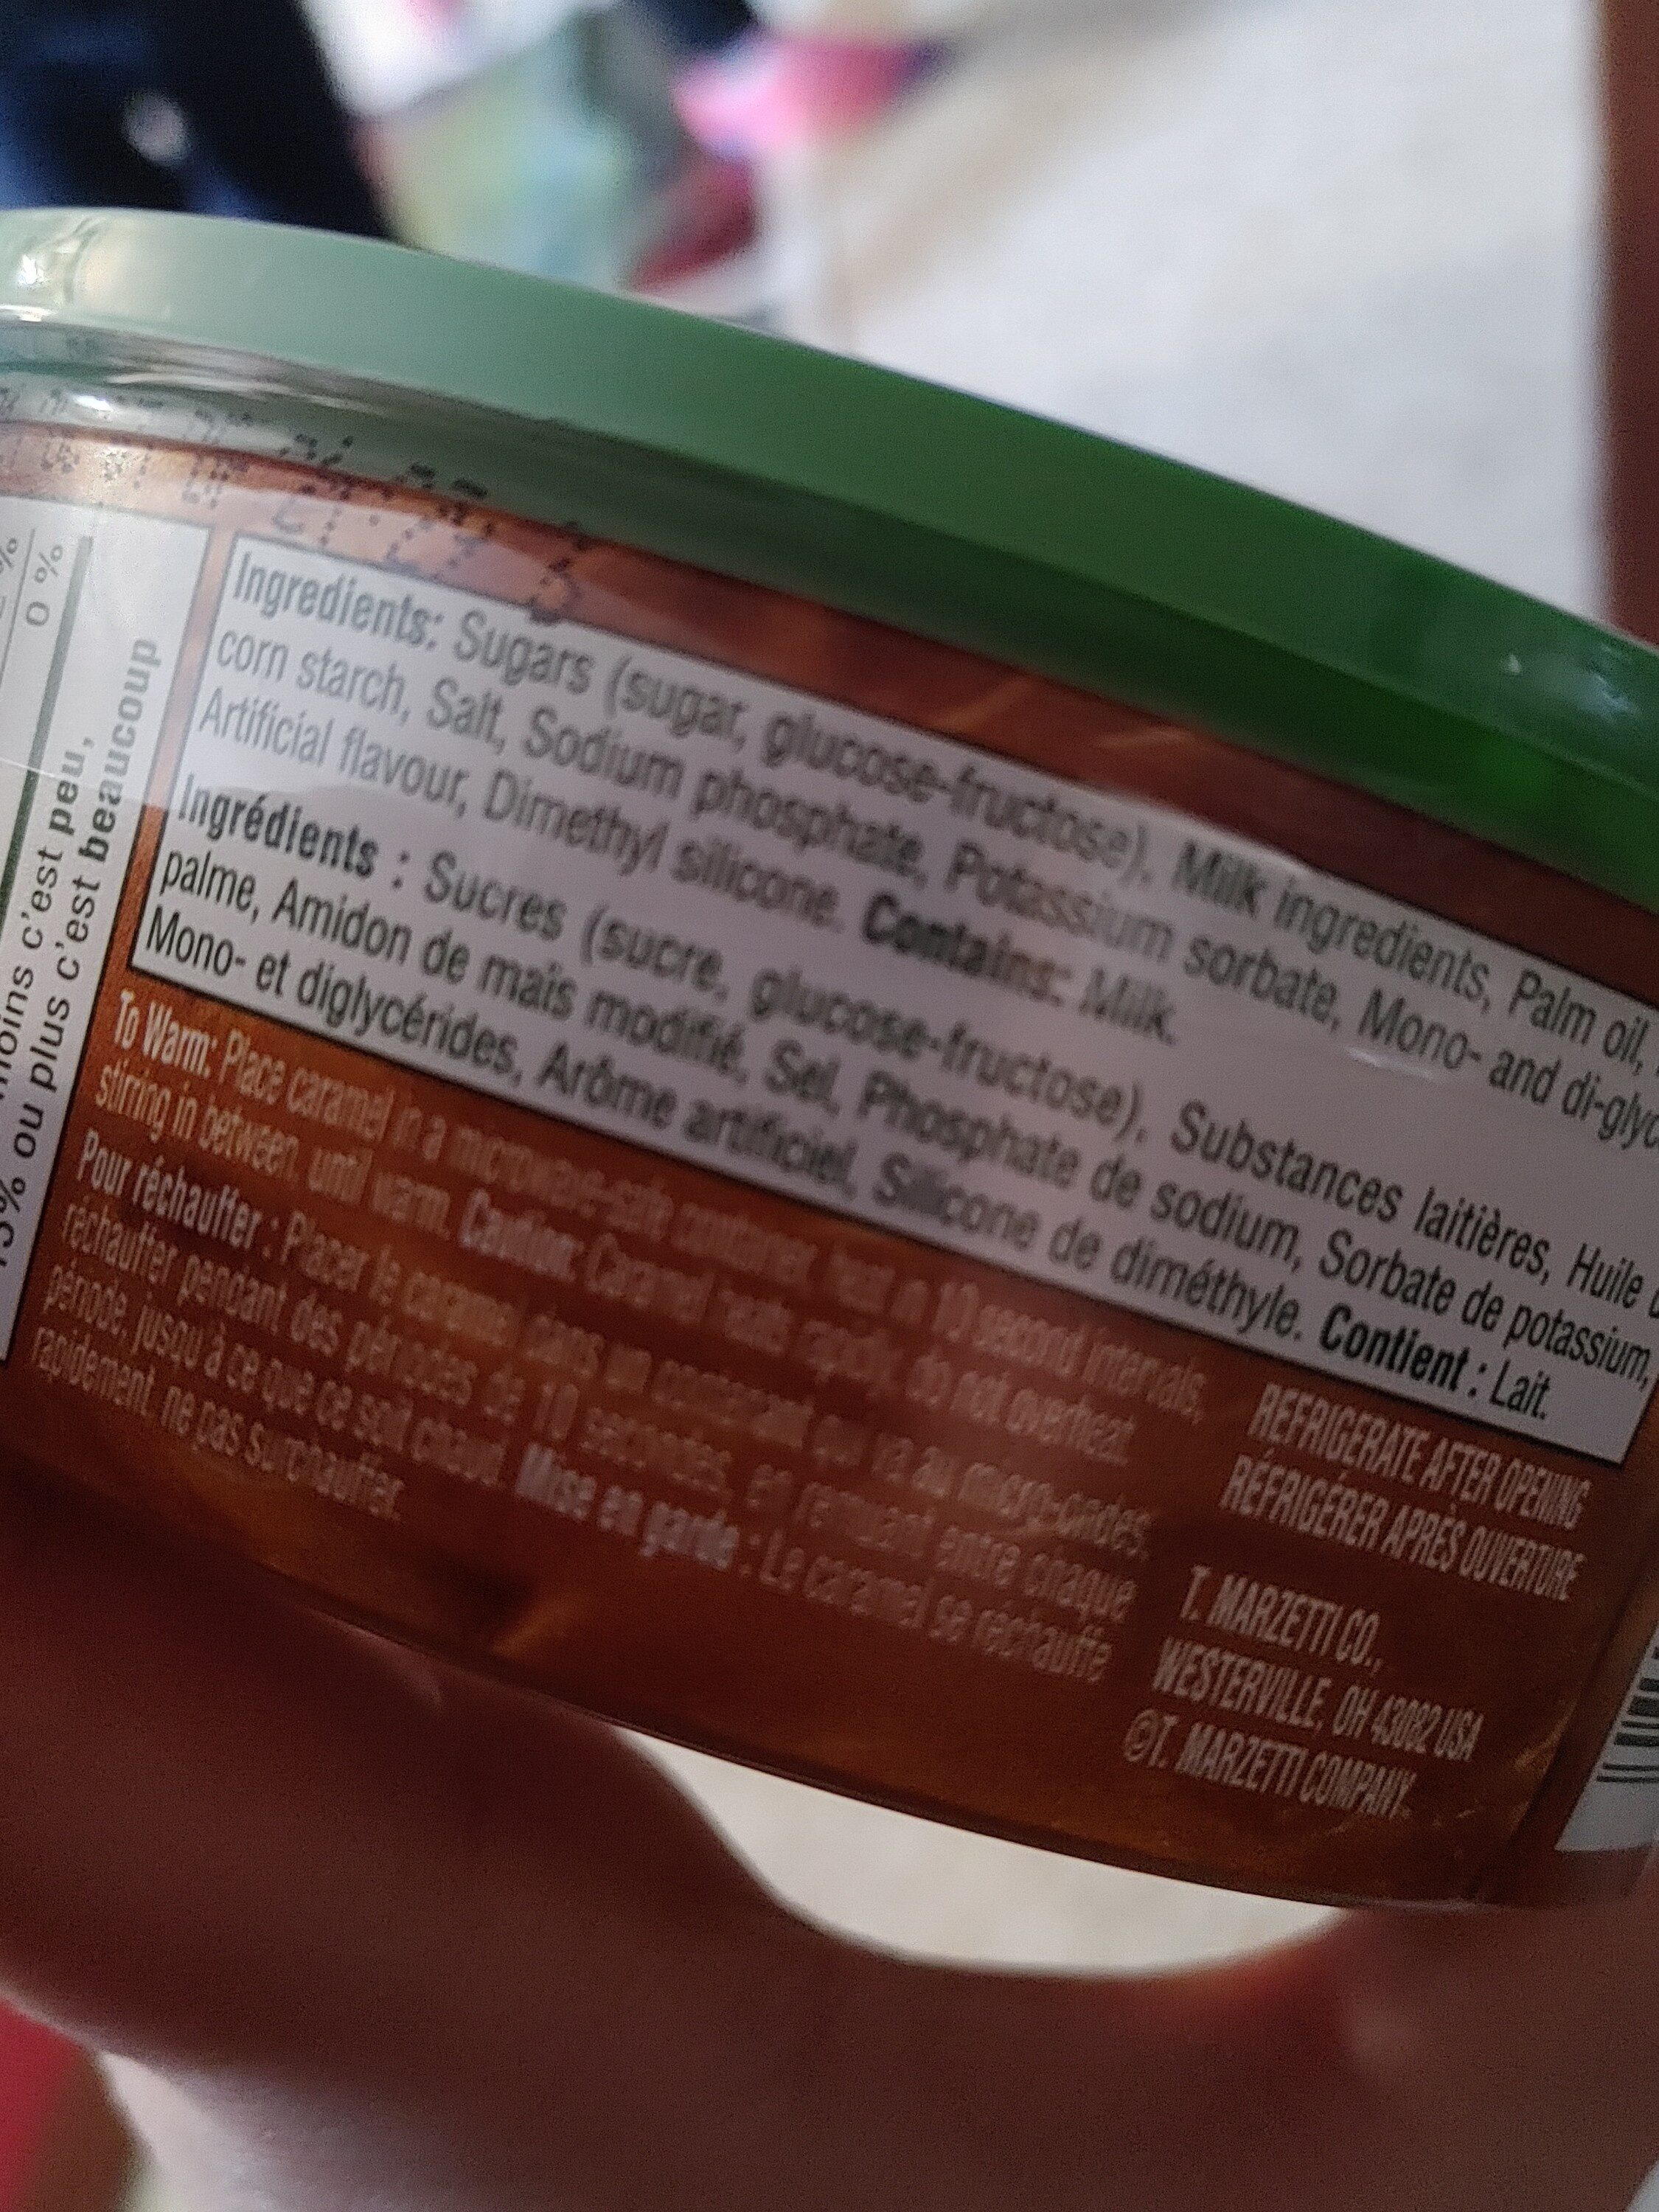 caramel dip - Ingredients